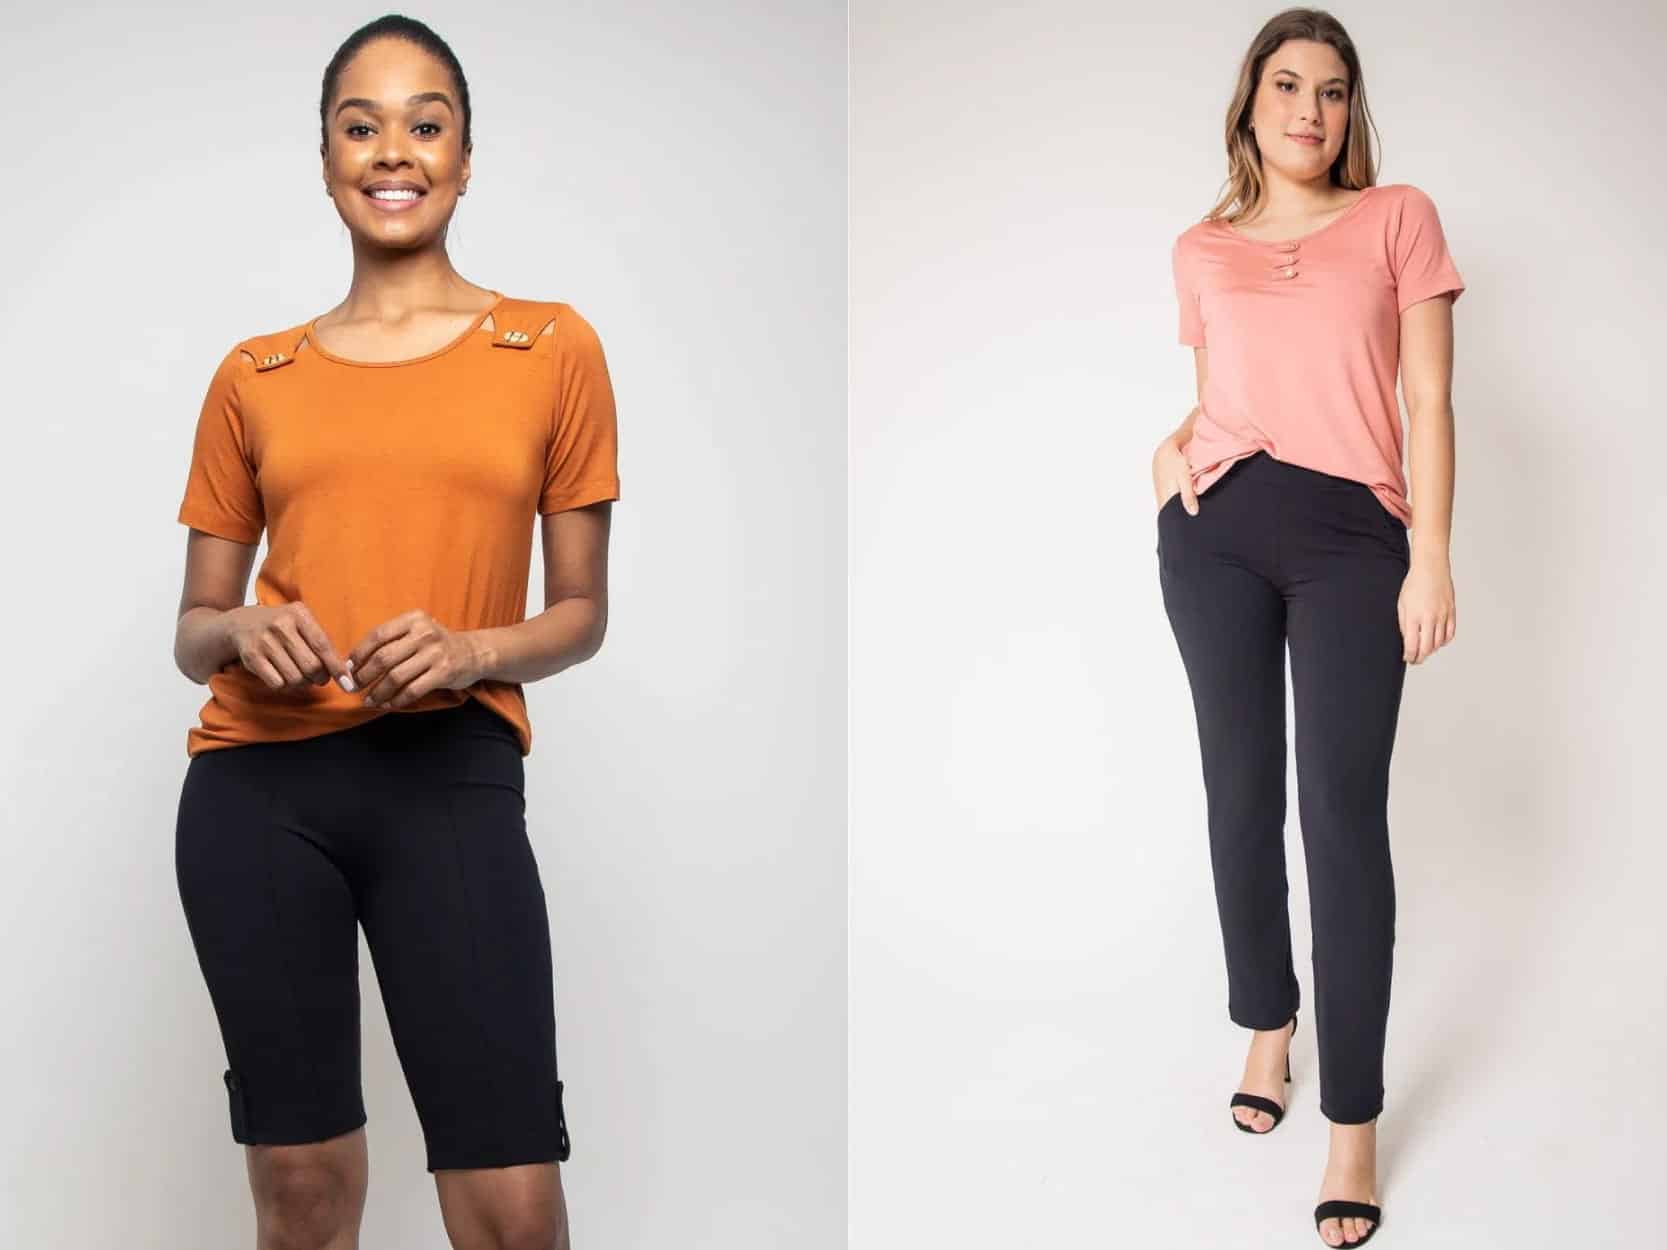 Duas modelos utilizando short e calça preta. Ambas estão com blusas coloridas, a primeira laranja e a segunda rosa.